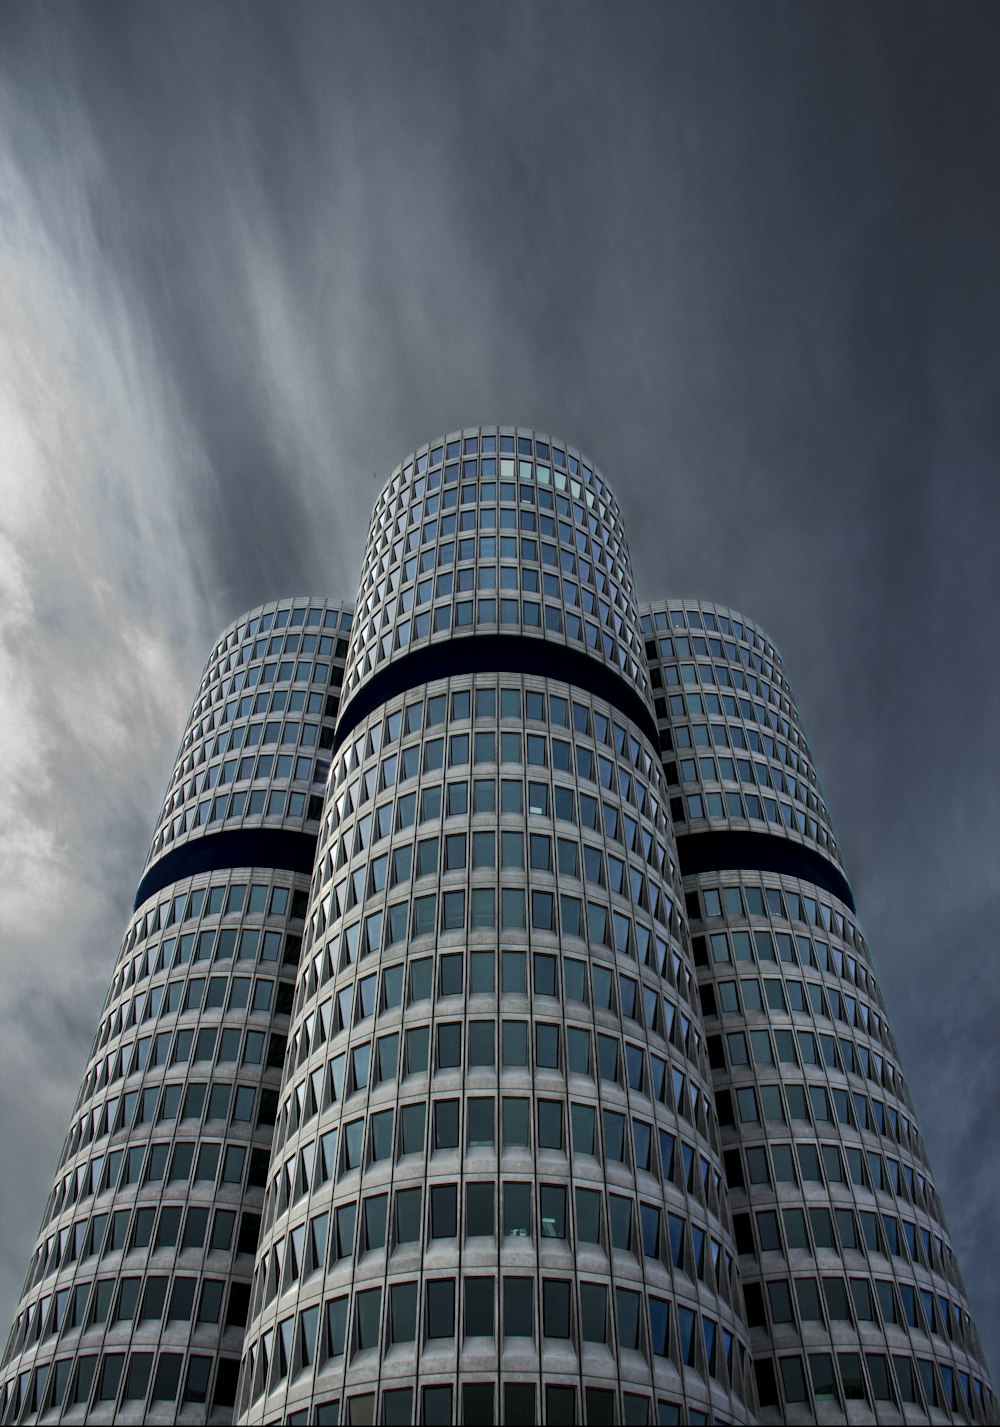 Fotografia de visão de baixo ângulo do edifício cinza